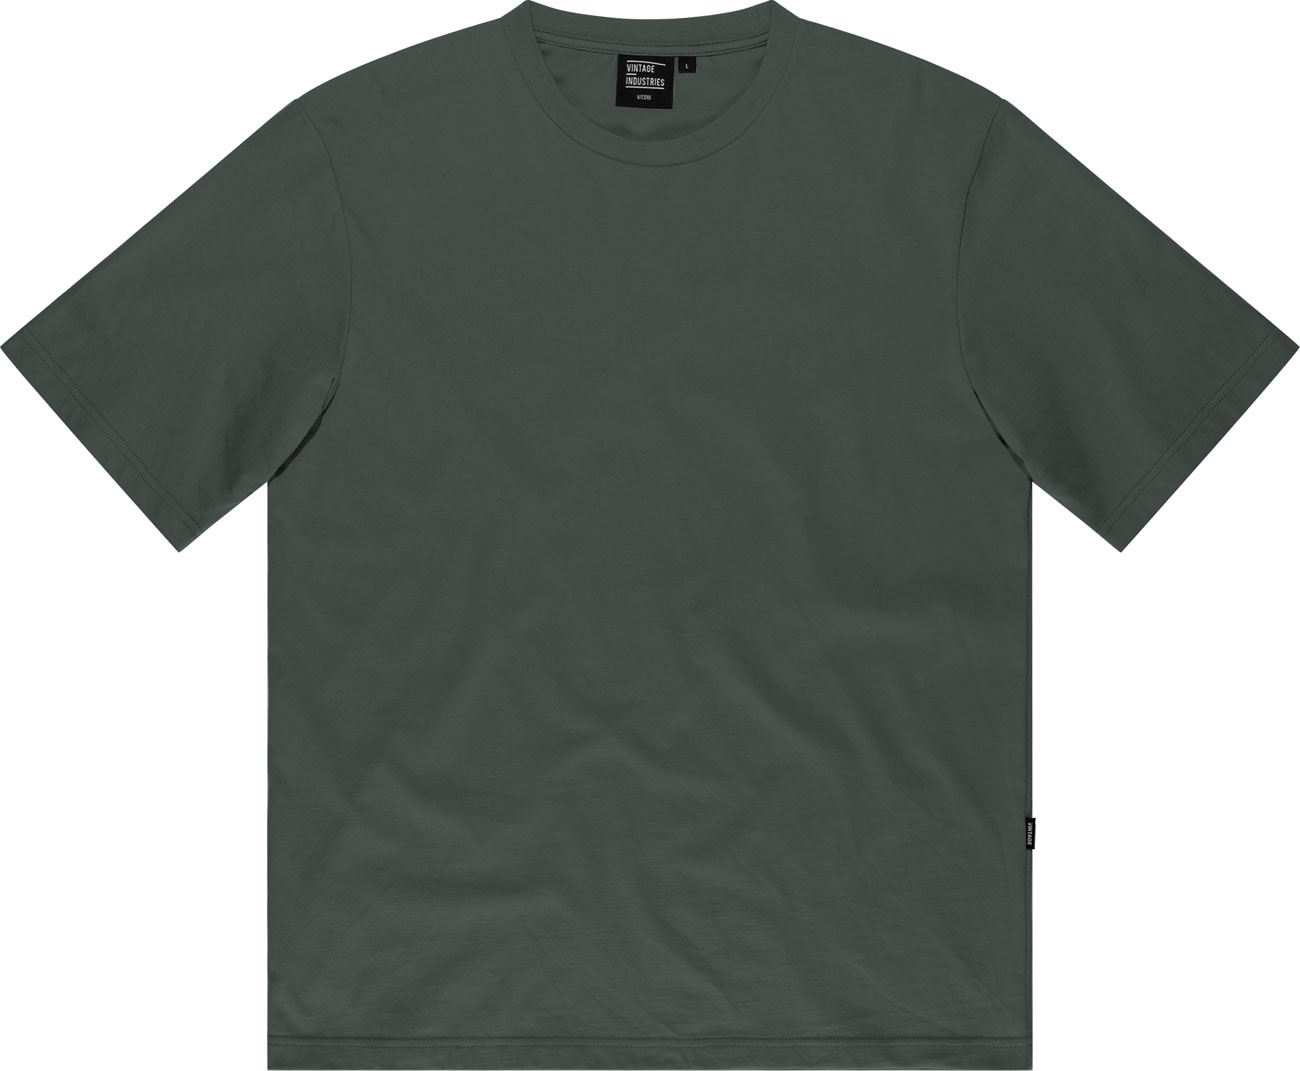 Vintage Industries Lex, t-shirt - Gris - M